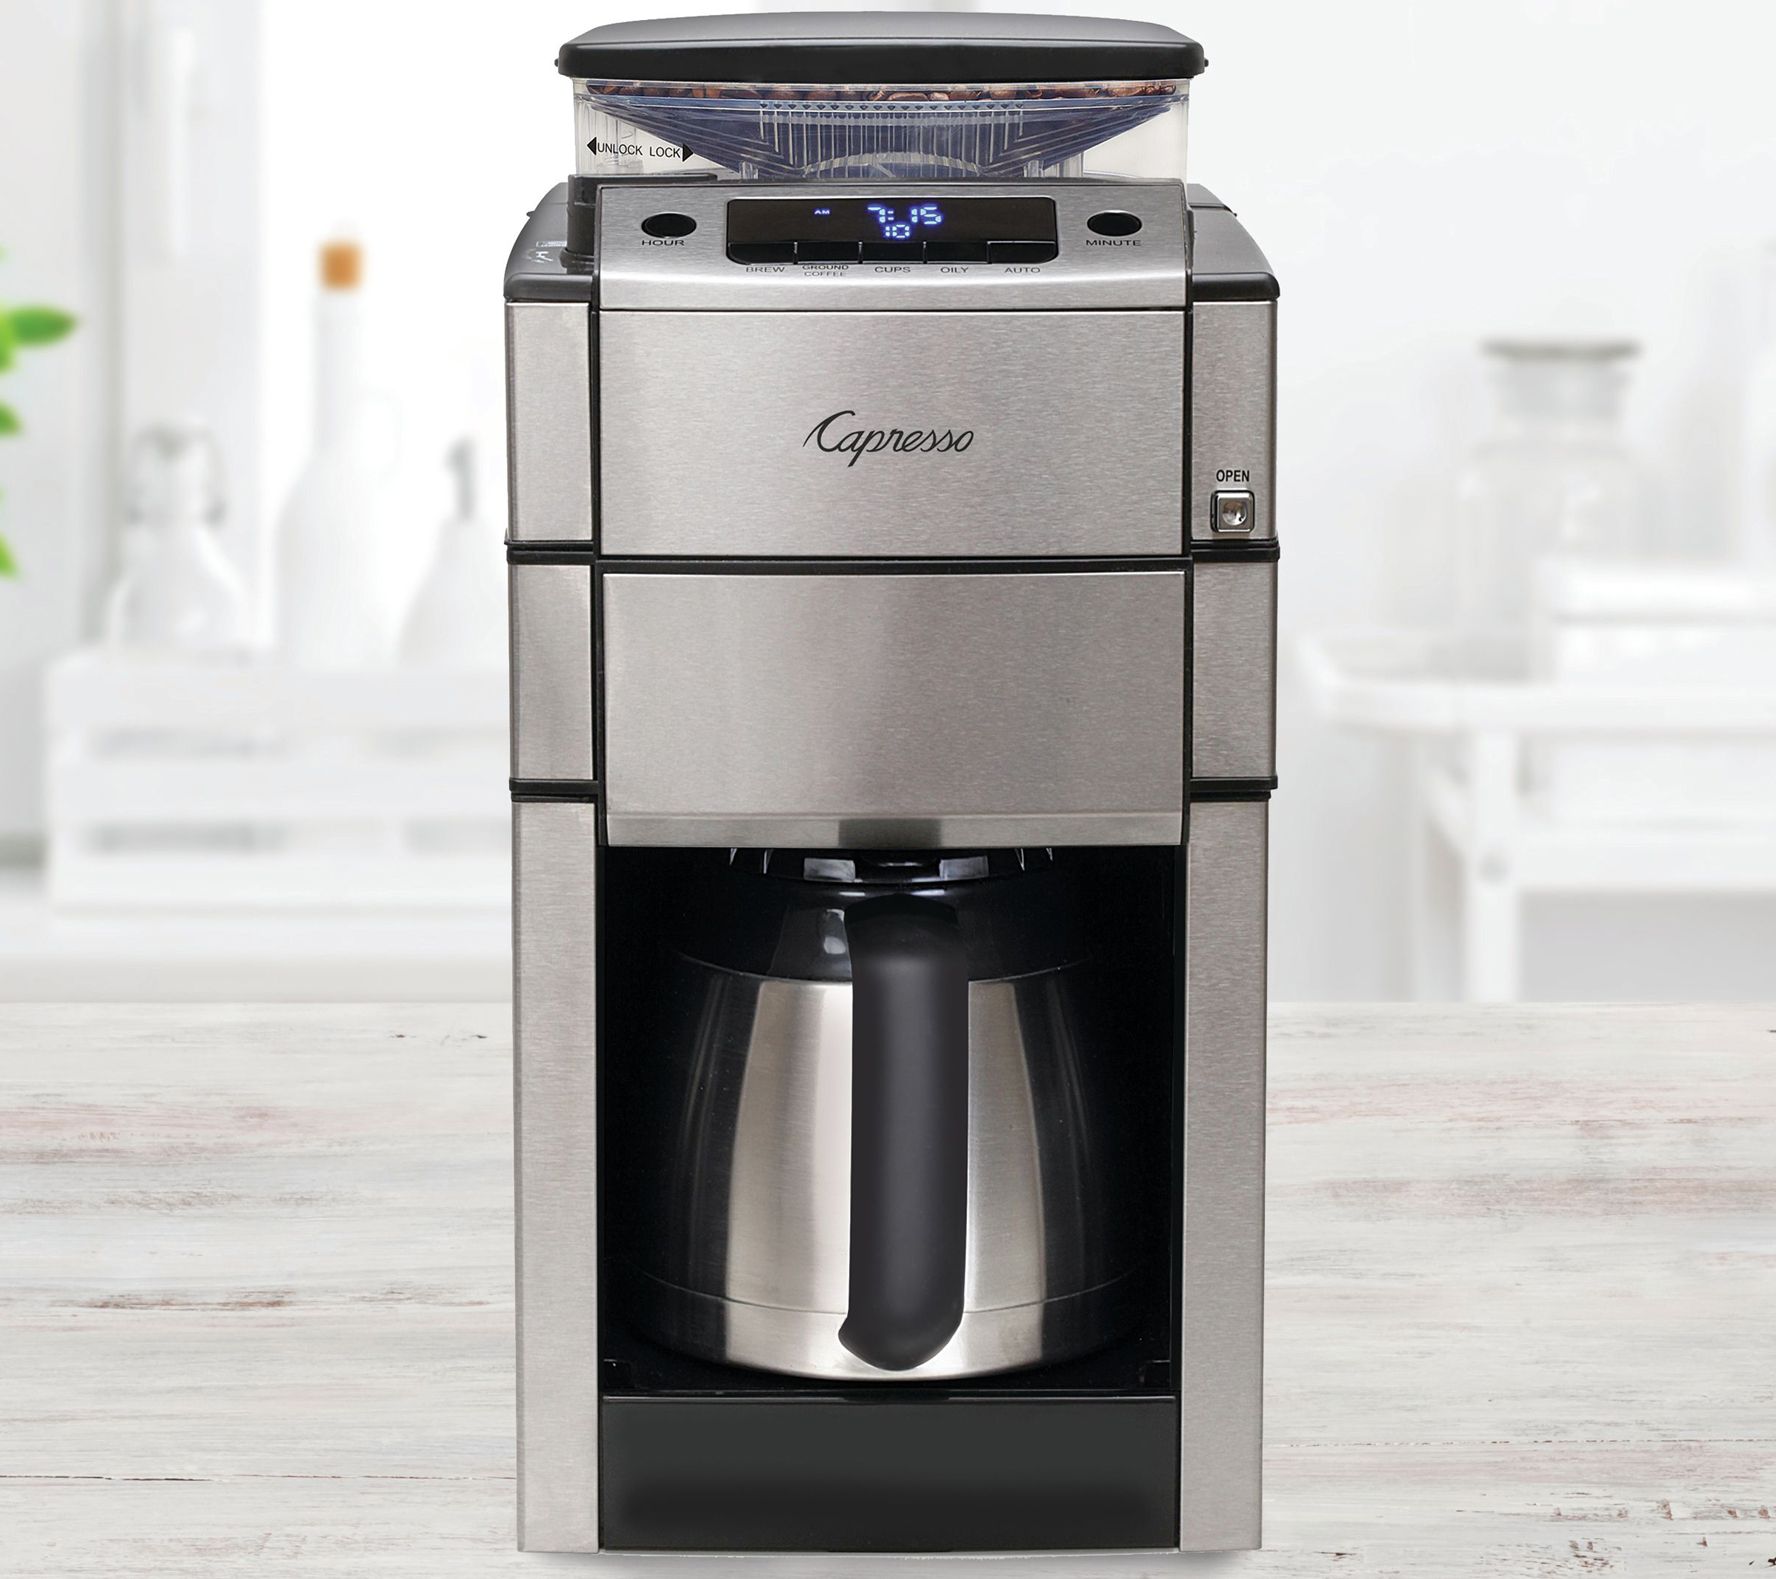 Espressione Combo Espresso Machine & 10 Cup Drip Coffeemaker